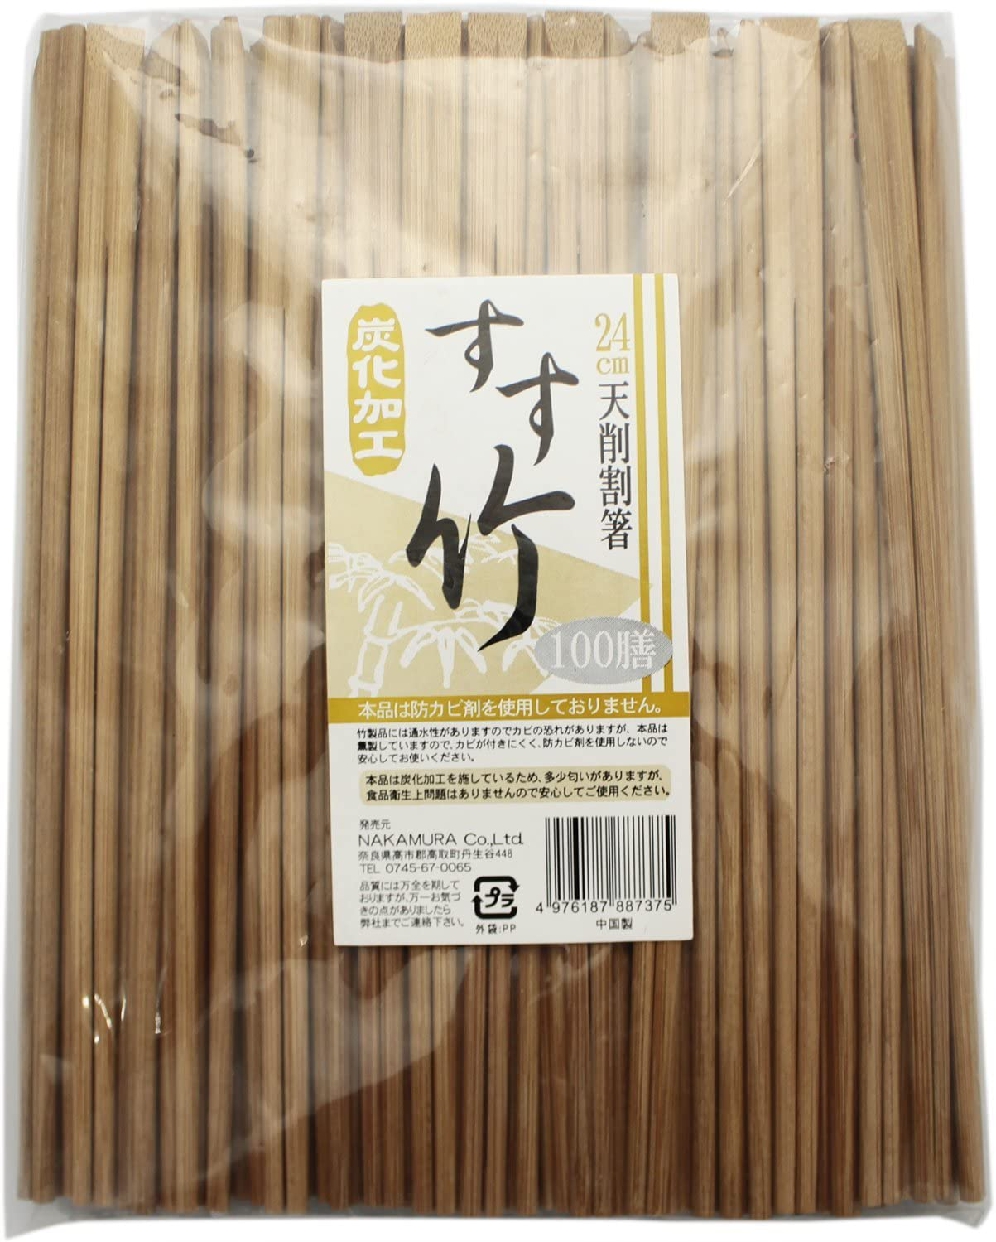 中村 割り箸 すす竹 天削 100膳 24cmの商品画像サムネ1 